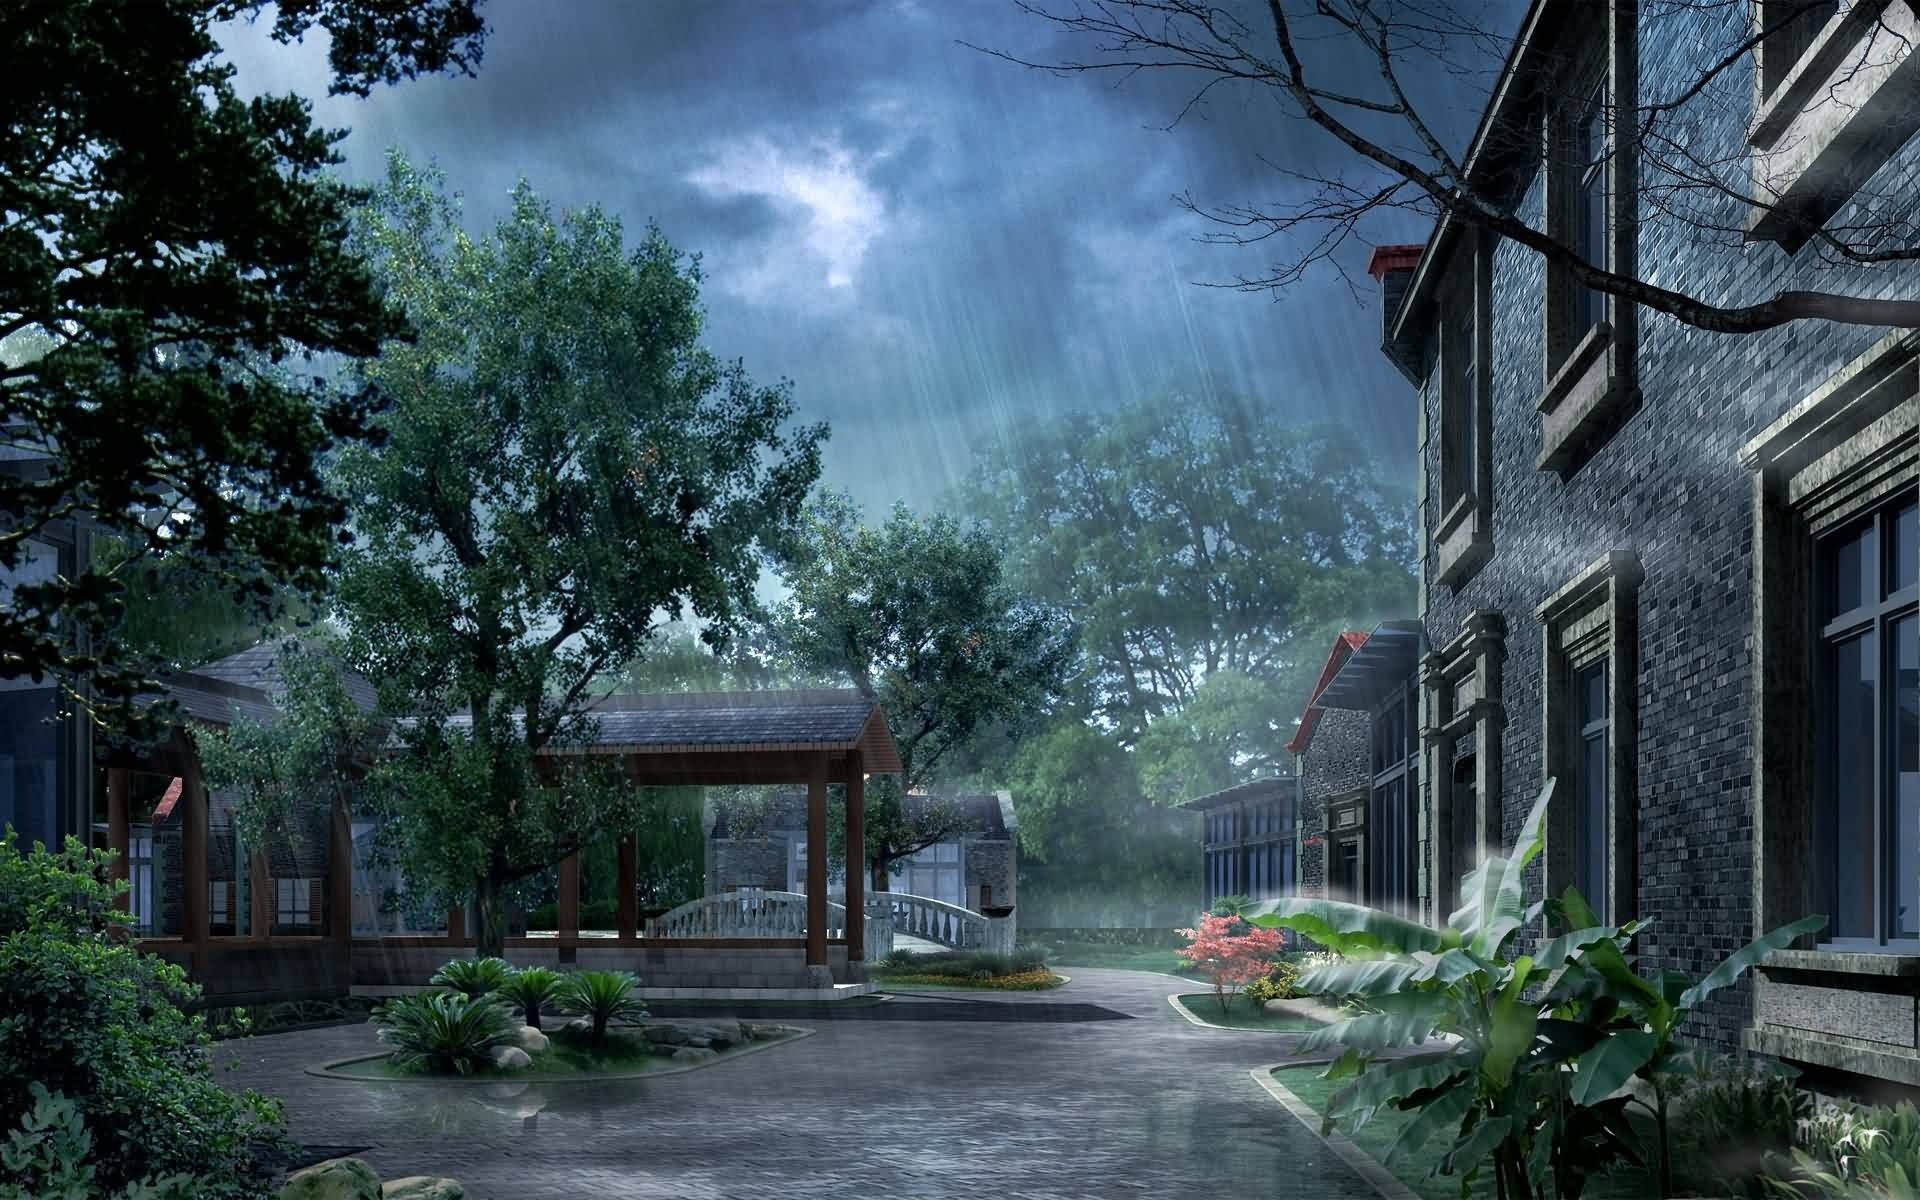 Rainy Weather Landscape Background